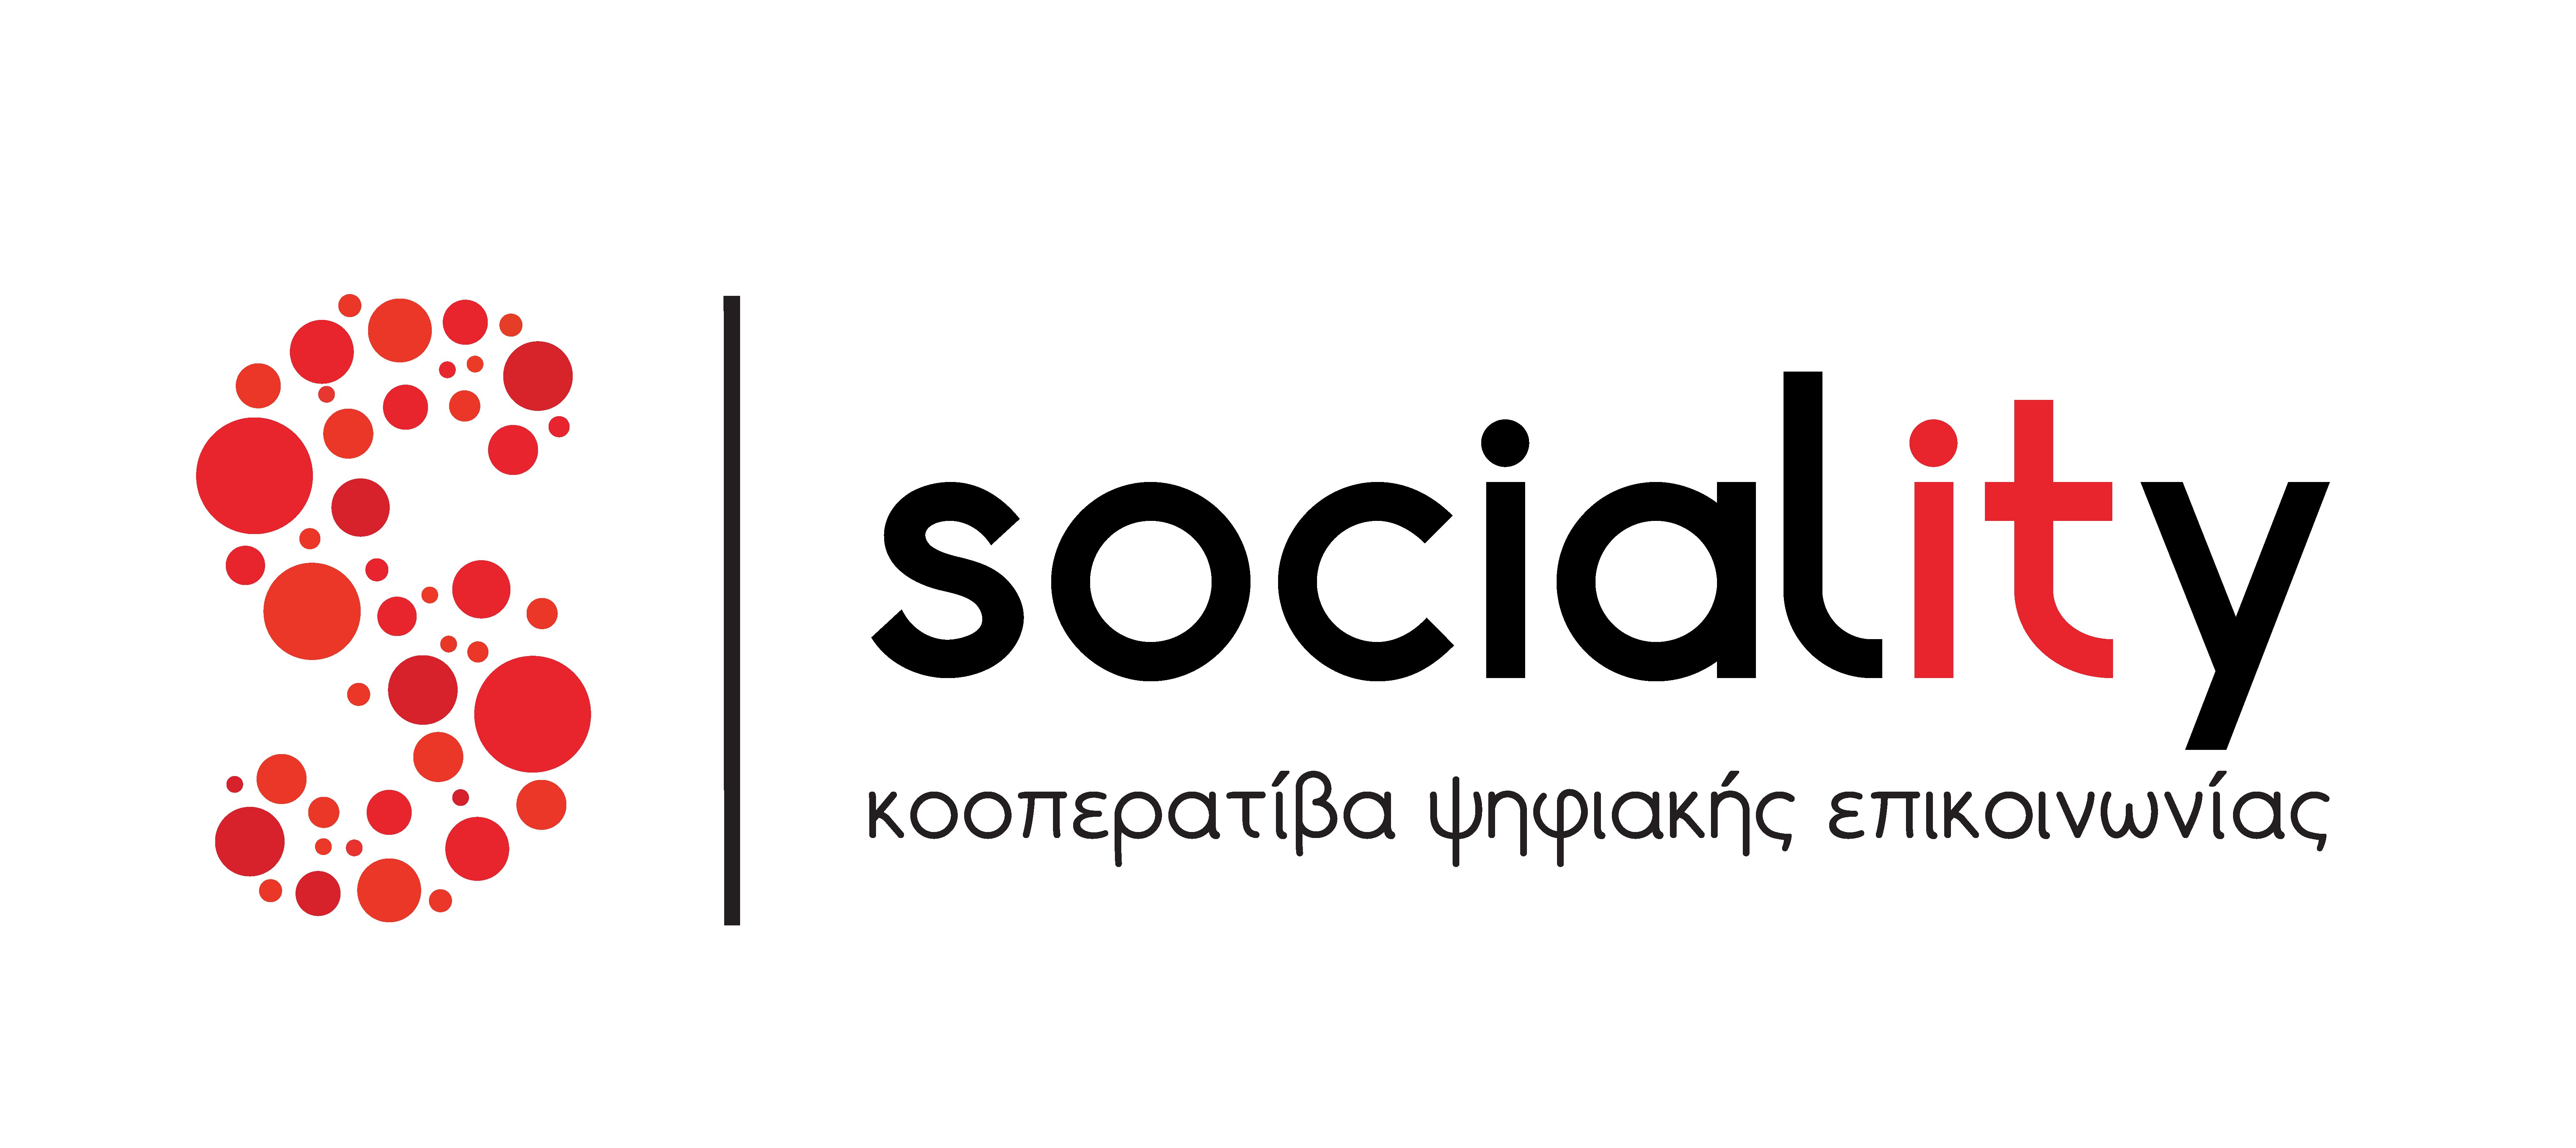 Sociality – Κοοπερατίβα Ψηφιακής Επικοινωνίας